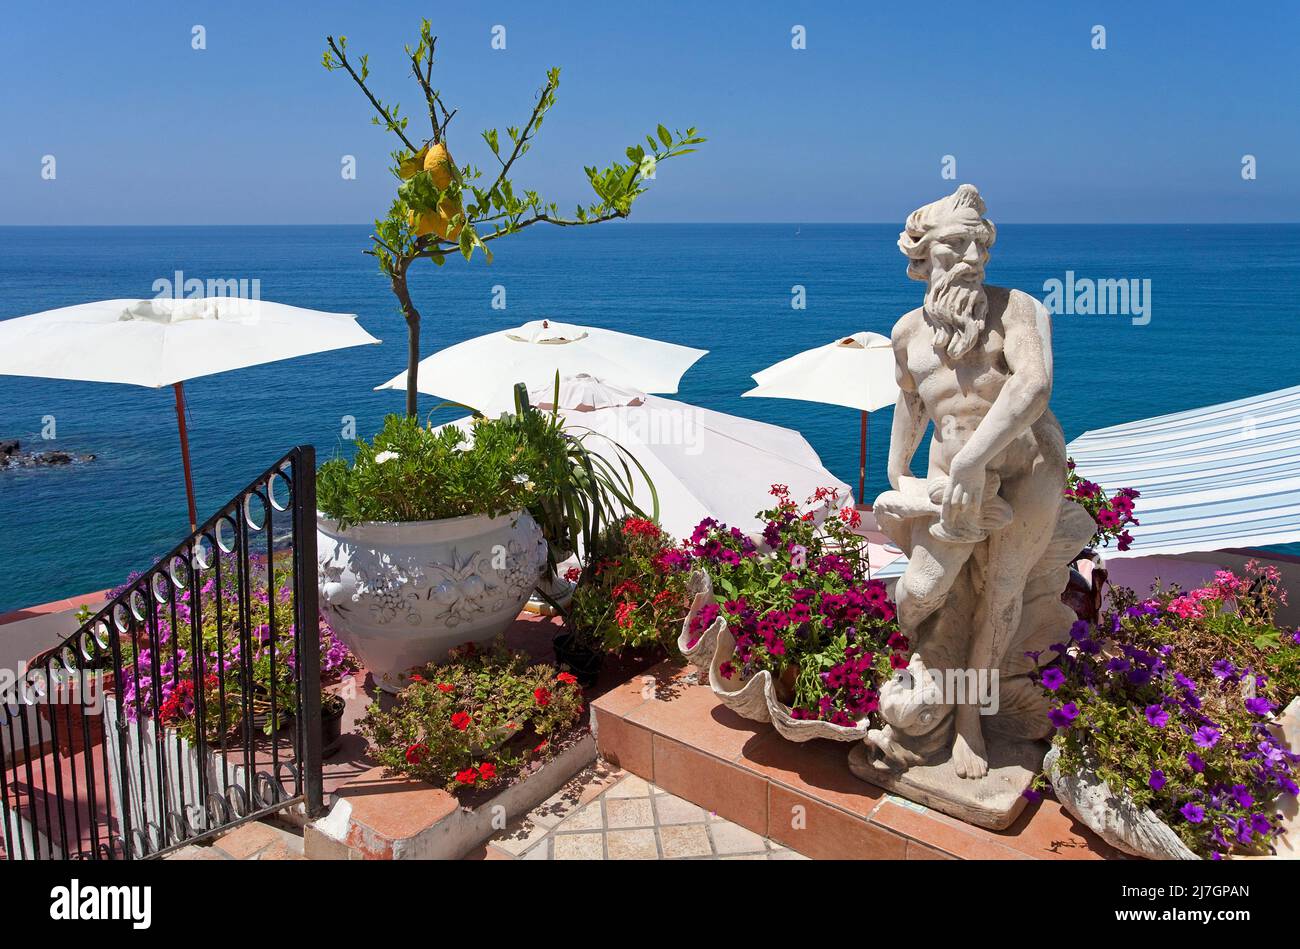 Sculpture et un citronnier au village de pêche pittoresque, Sant' Angelo, île d'Ischia, golfe de Neapel, Italie, Mer Méditerranée, Europe Banque D'Images